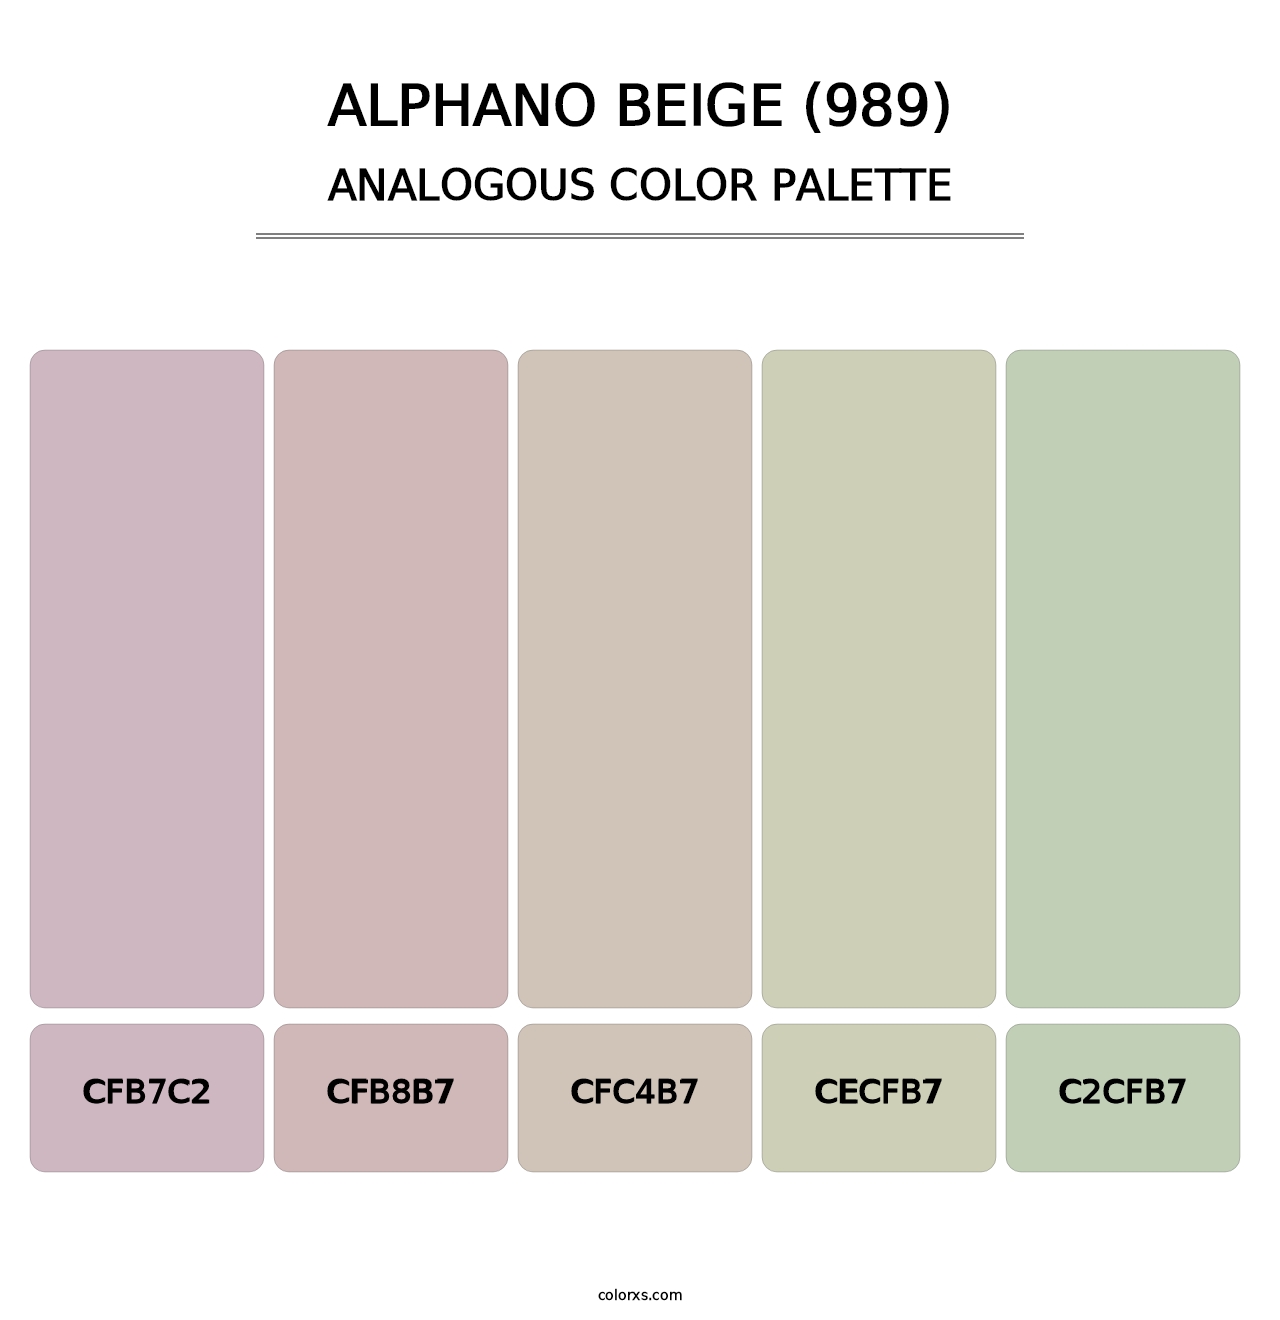 Alphano Beige (989) - Analogous Color Palette